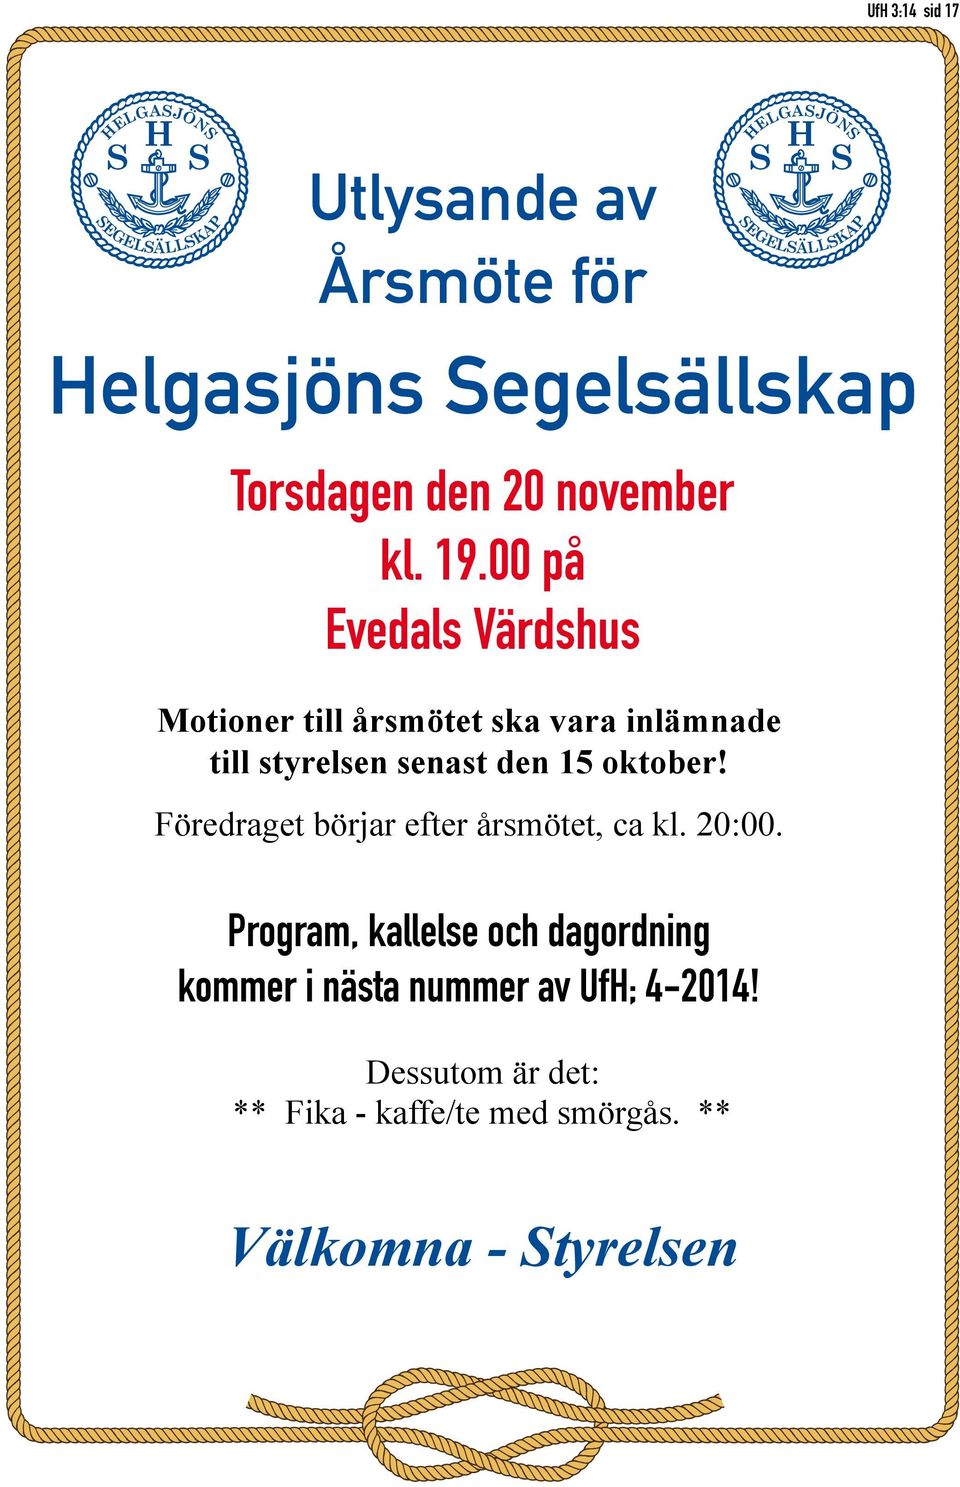 00 på Evedals Värdshus Motioner till årsmötet ska vara inlämnade till styrelsen senast den 15 oktober!